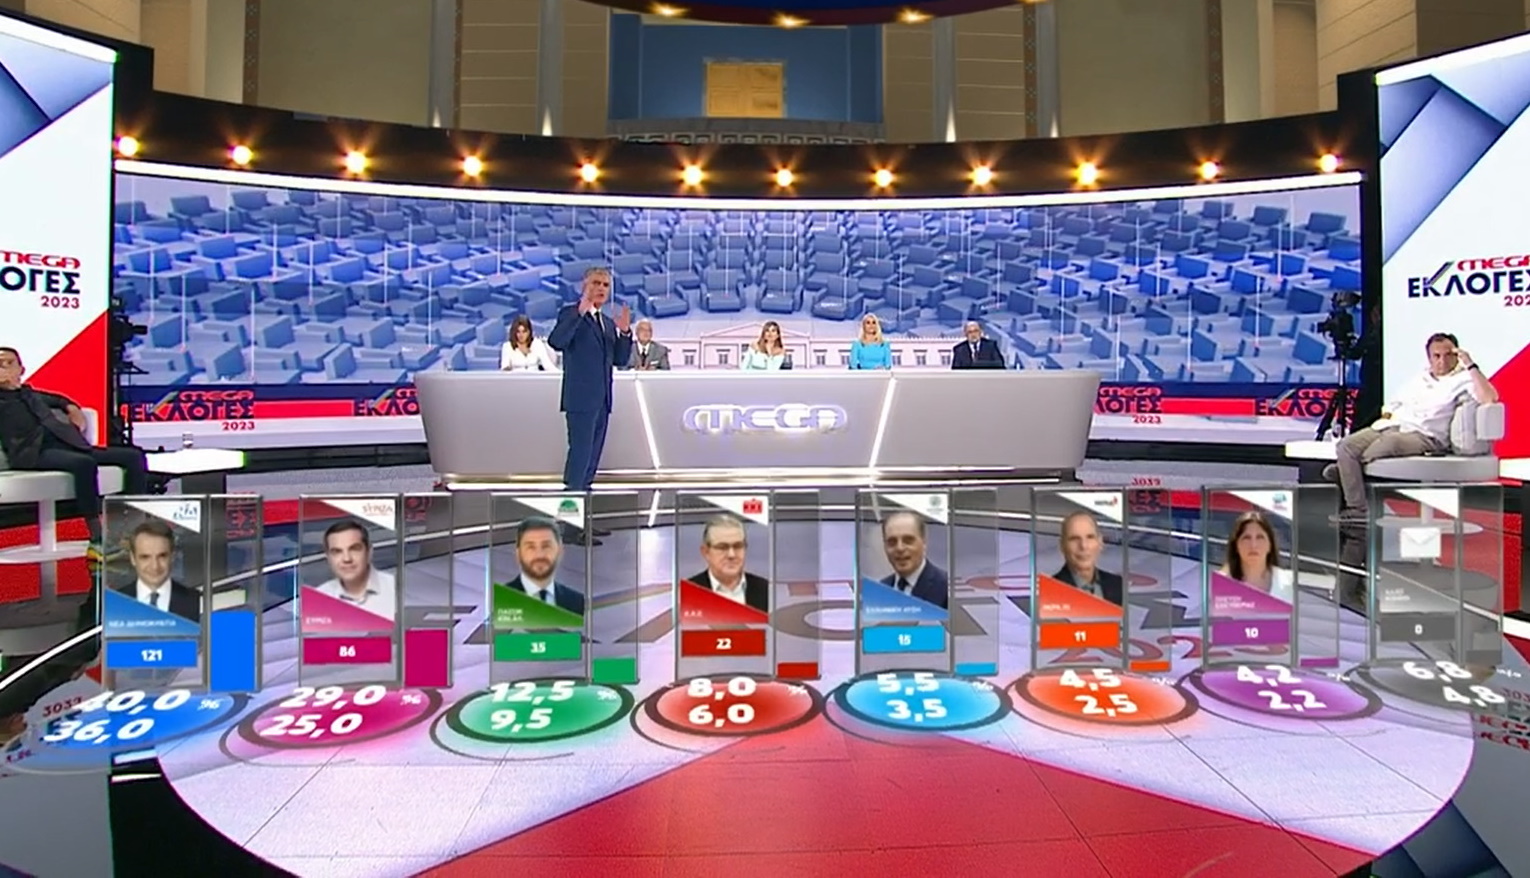 Εκλογές 2023: Ο Νίκος Ευαγγελάτος παρουσίασε το exit poll με εντυπωσιακά γραφικά στο MEGA